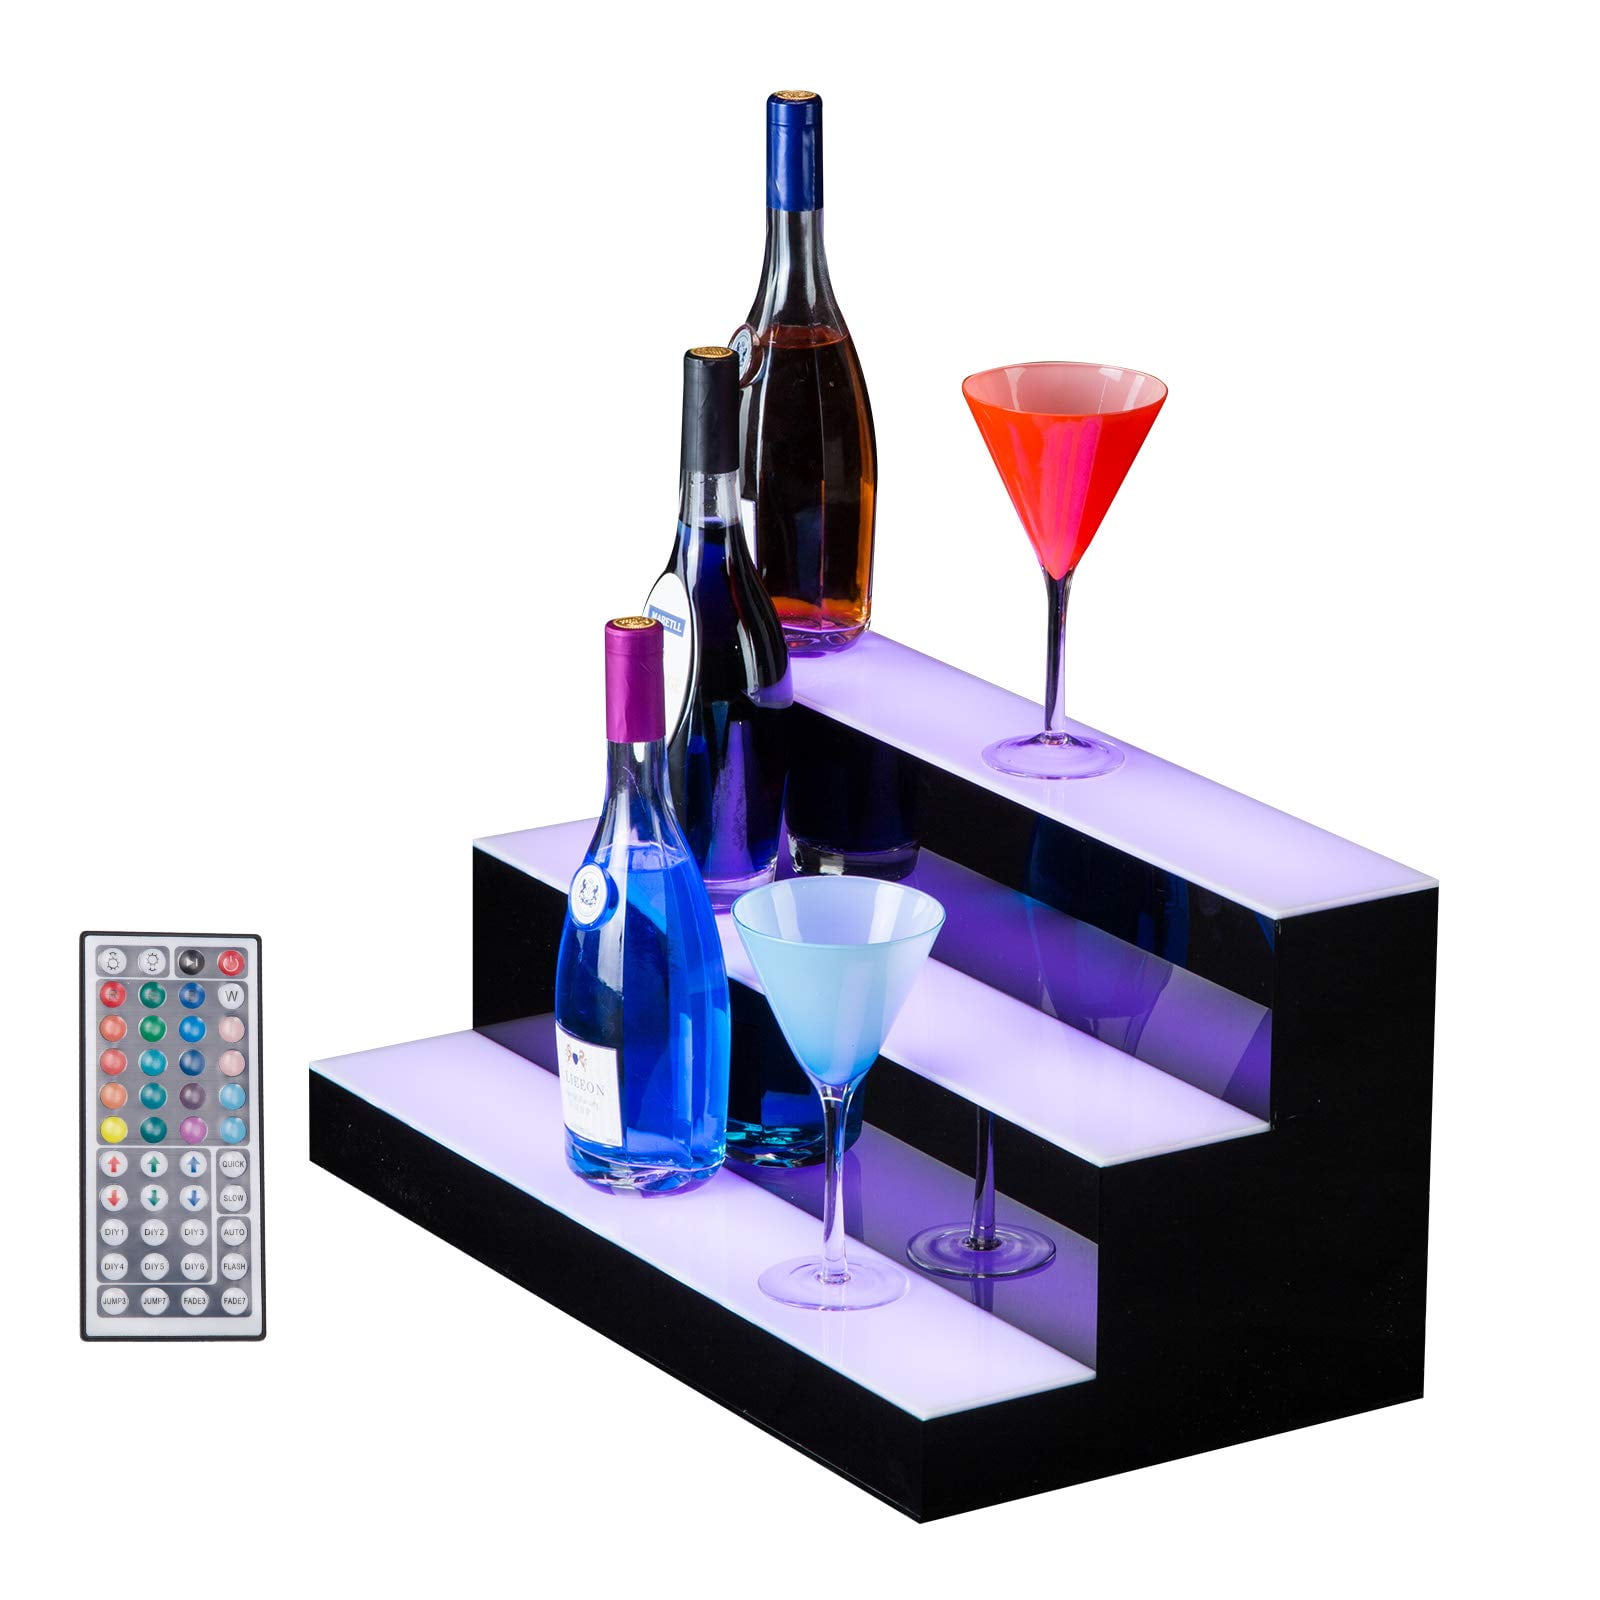 Details about   24" LED Lighted Bar Shelves 1 Tier Step Liquor Bottle Display Shelf Bar Stand US